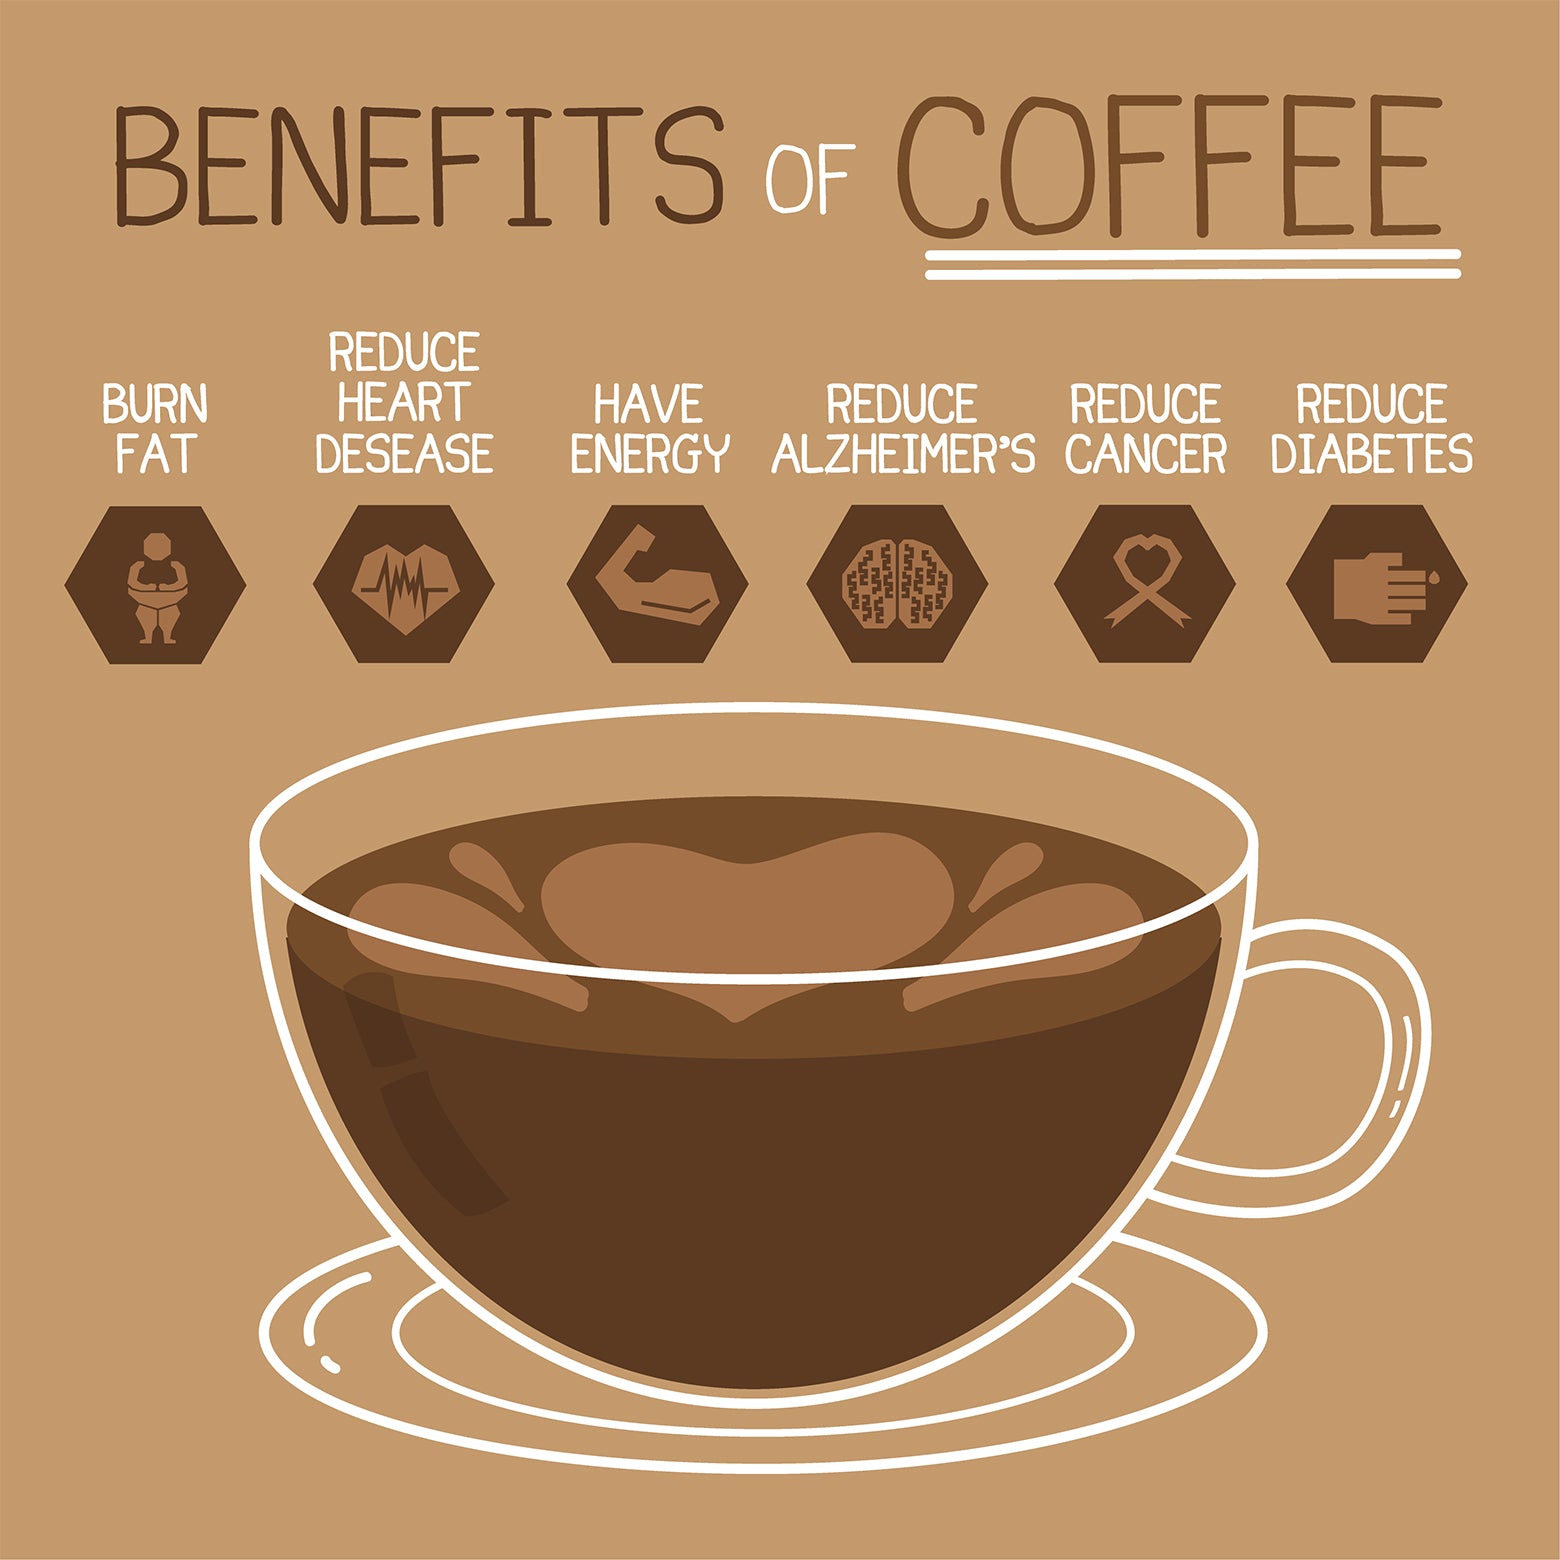 ประโยชน์ต่อสุขภาพของกาแฟแบล็คครีกคอฟฟี่บล็อก กาแฟดีต่อคุณ